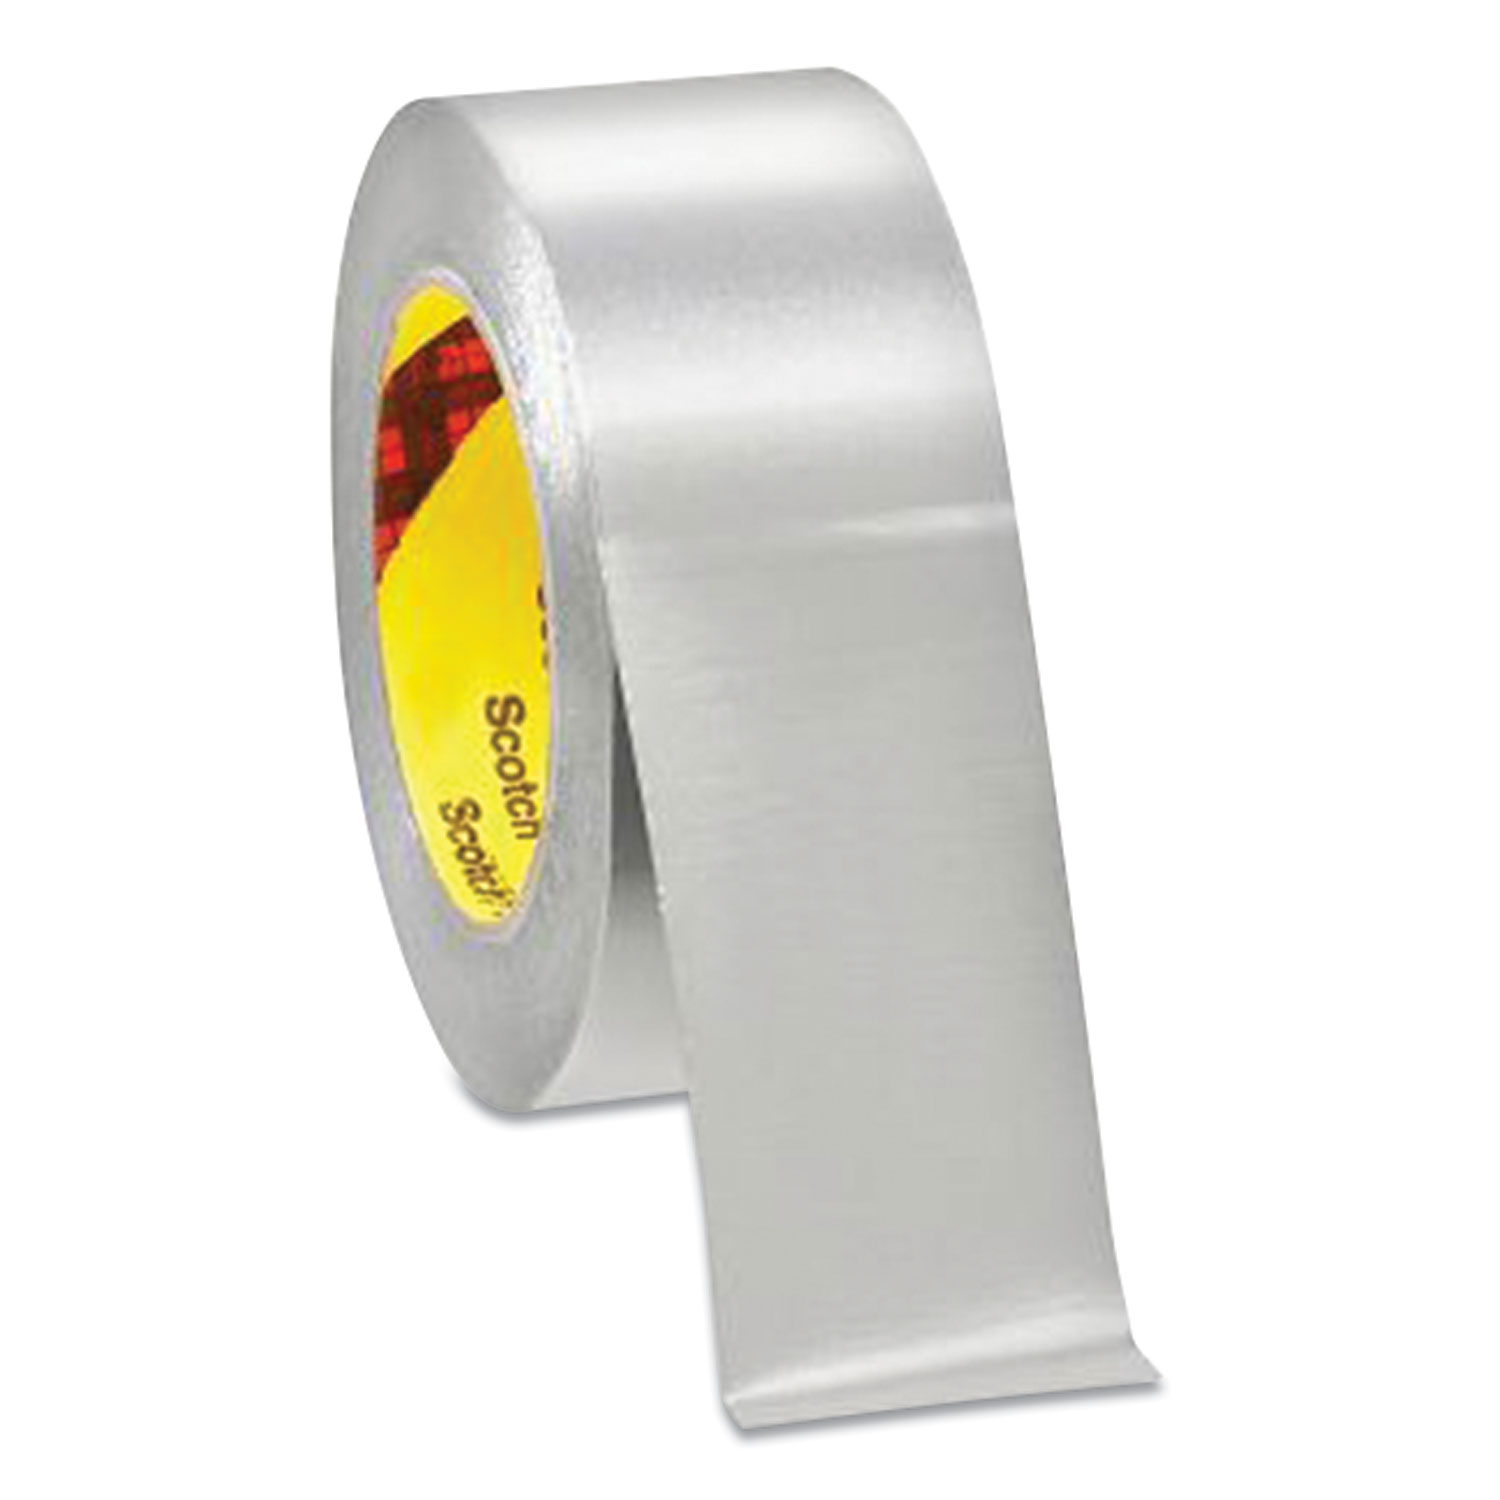 3M™ 425 Aluminum Foil Tape, 3 Core, 2 x 60 yds, Silver